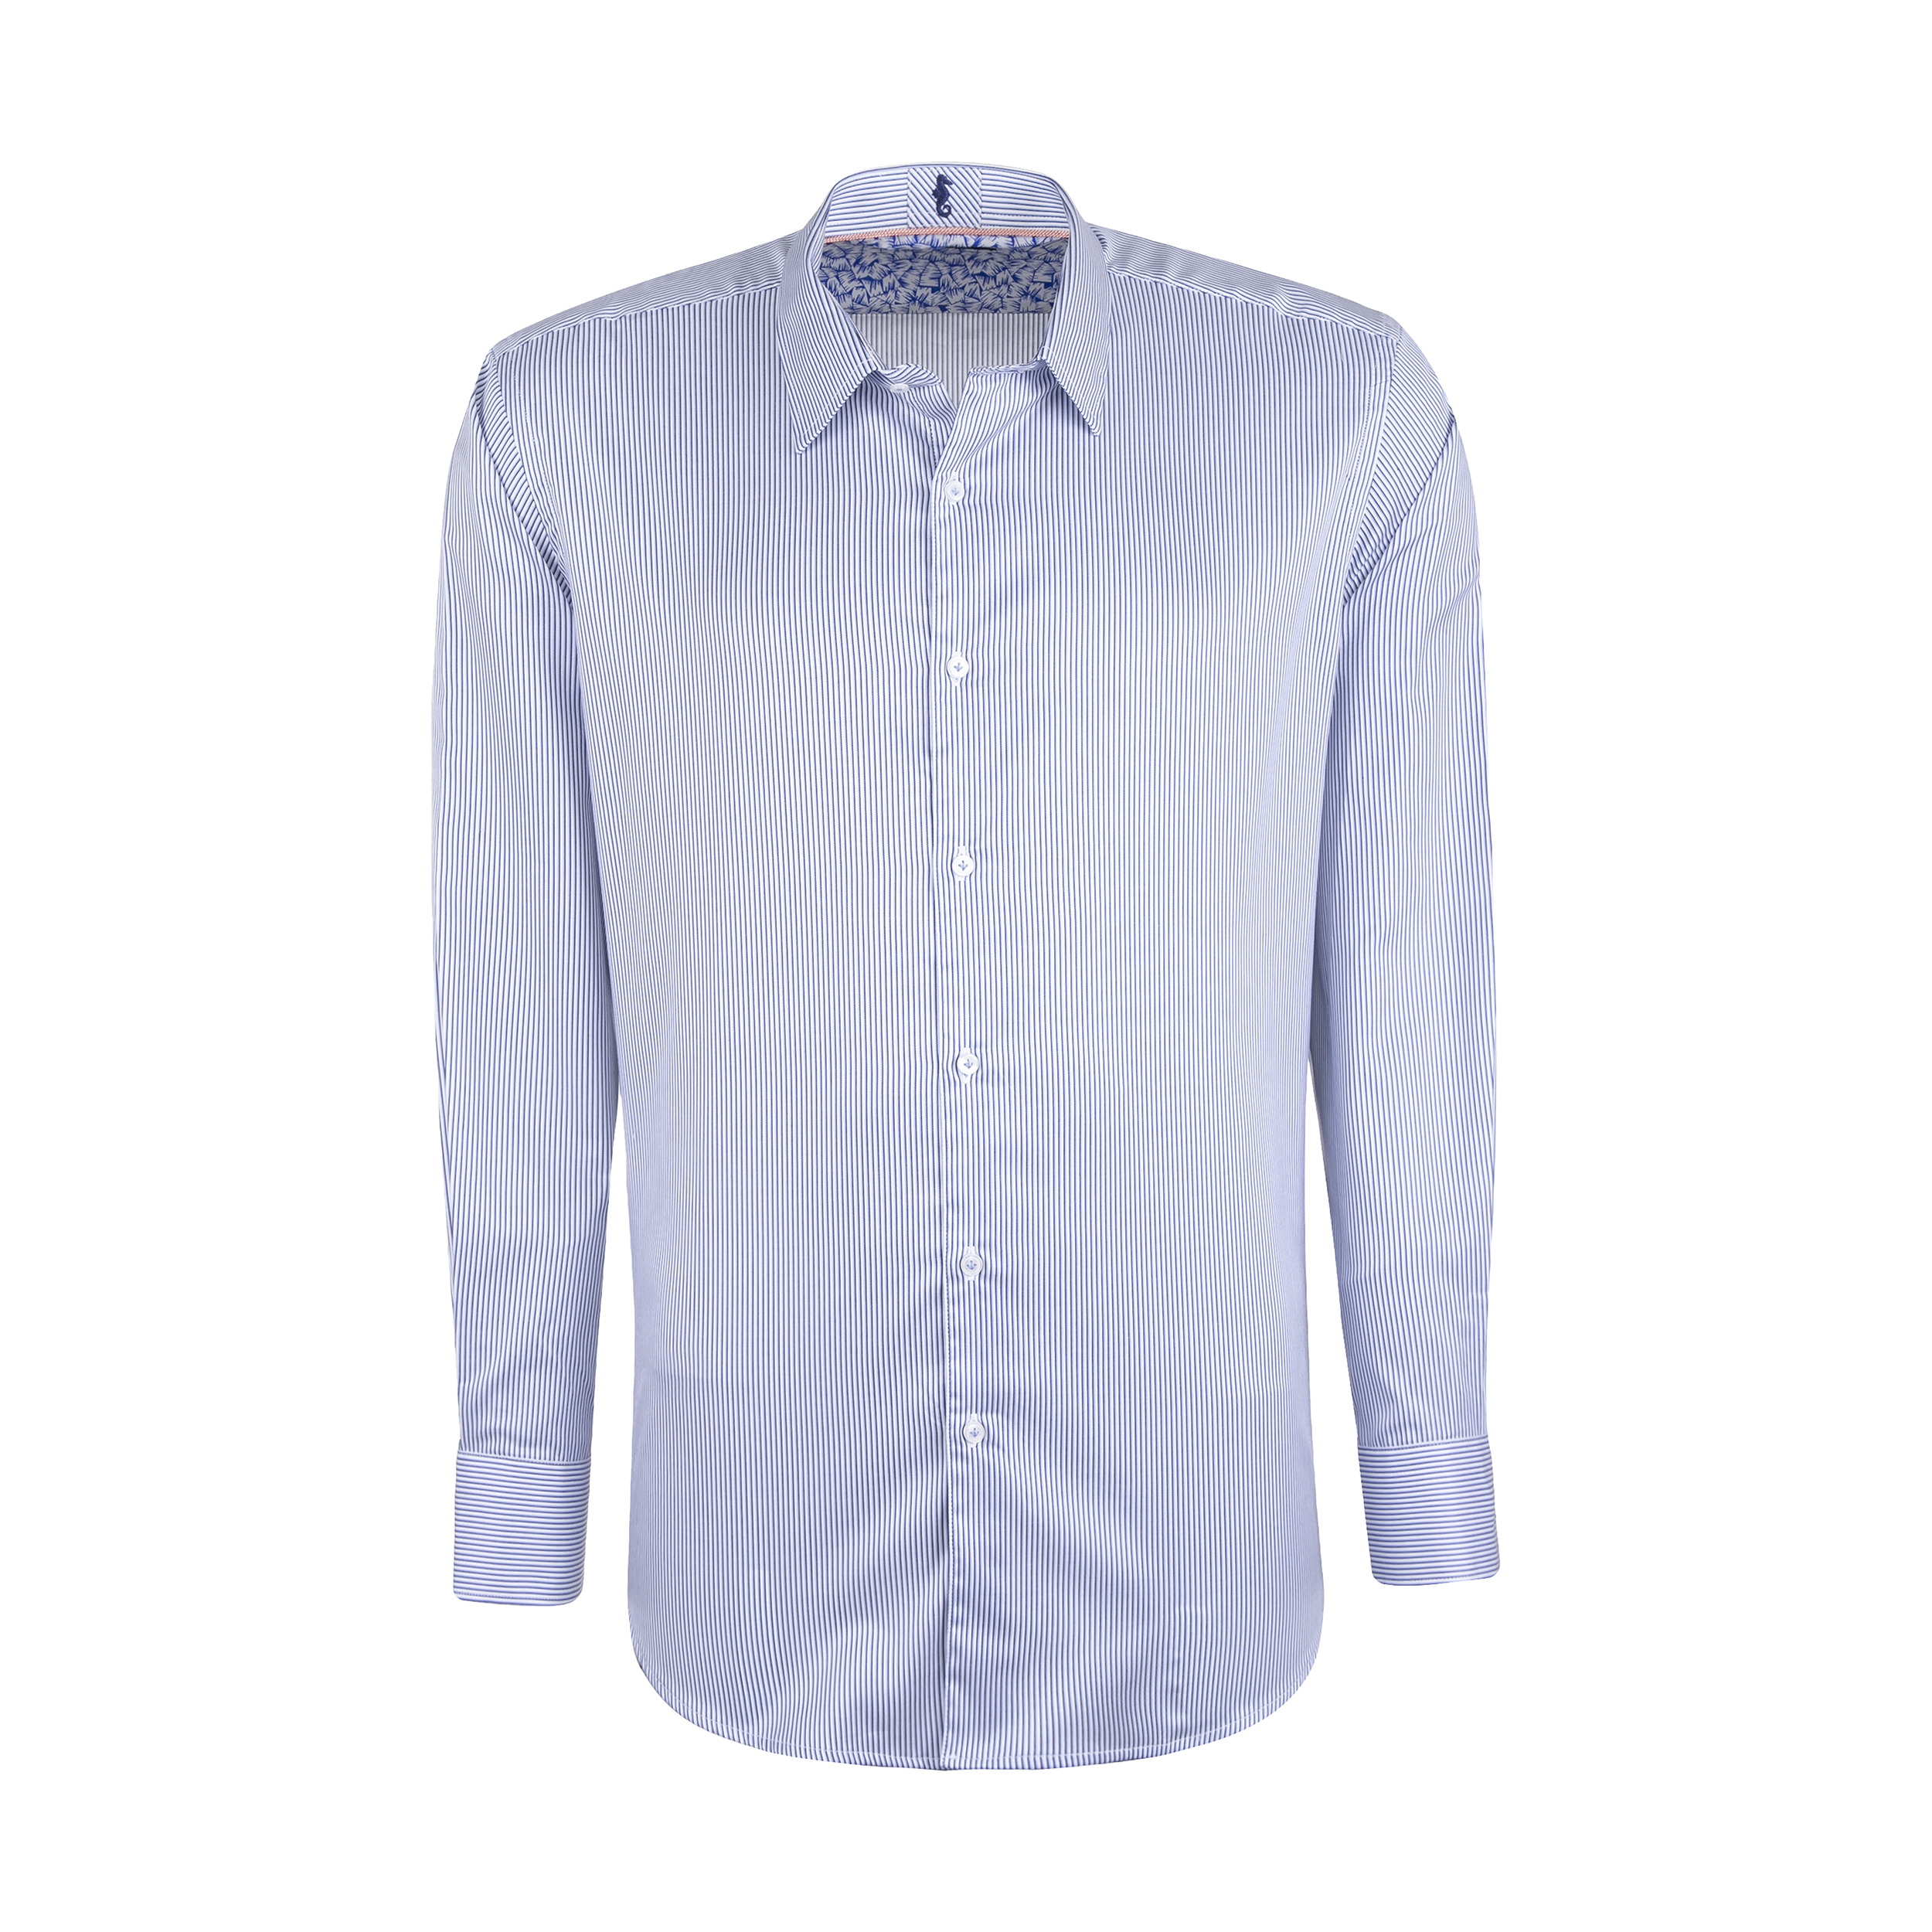 پیراهن آستین بلند مردانه ایکات مدل میل ریز کد PST1152330 رنگ  آبی